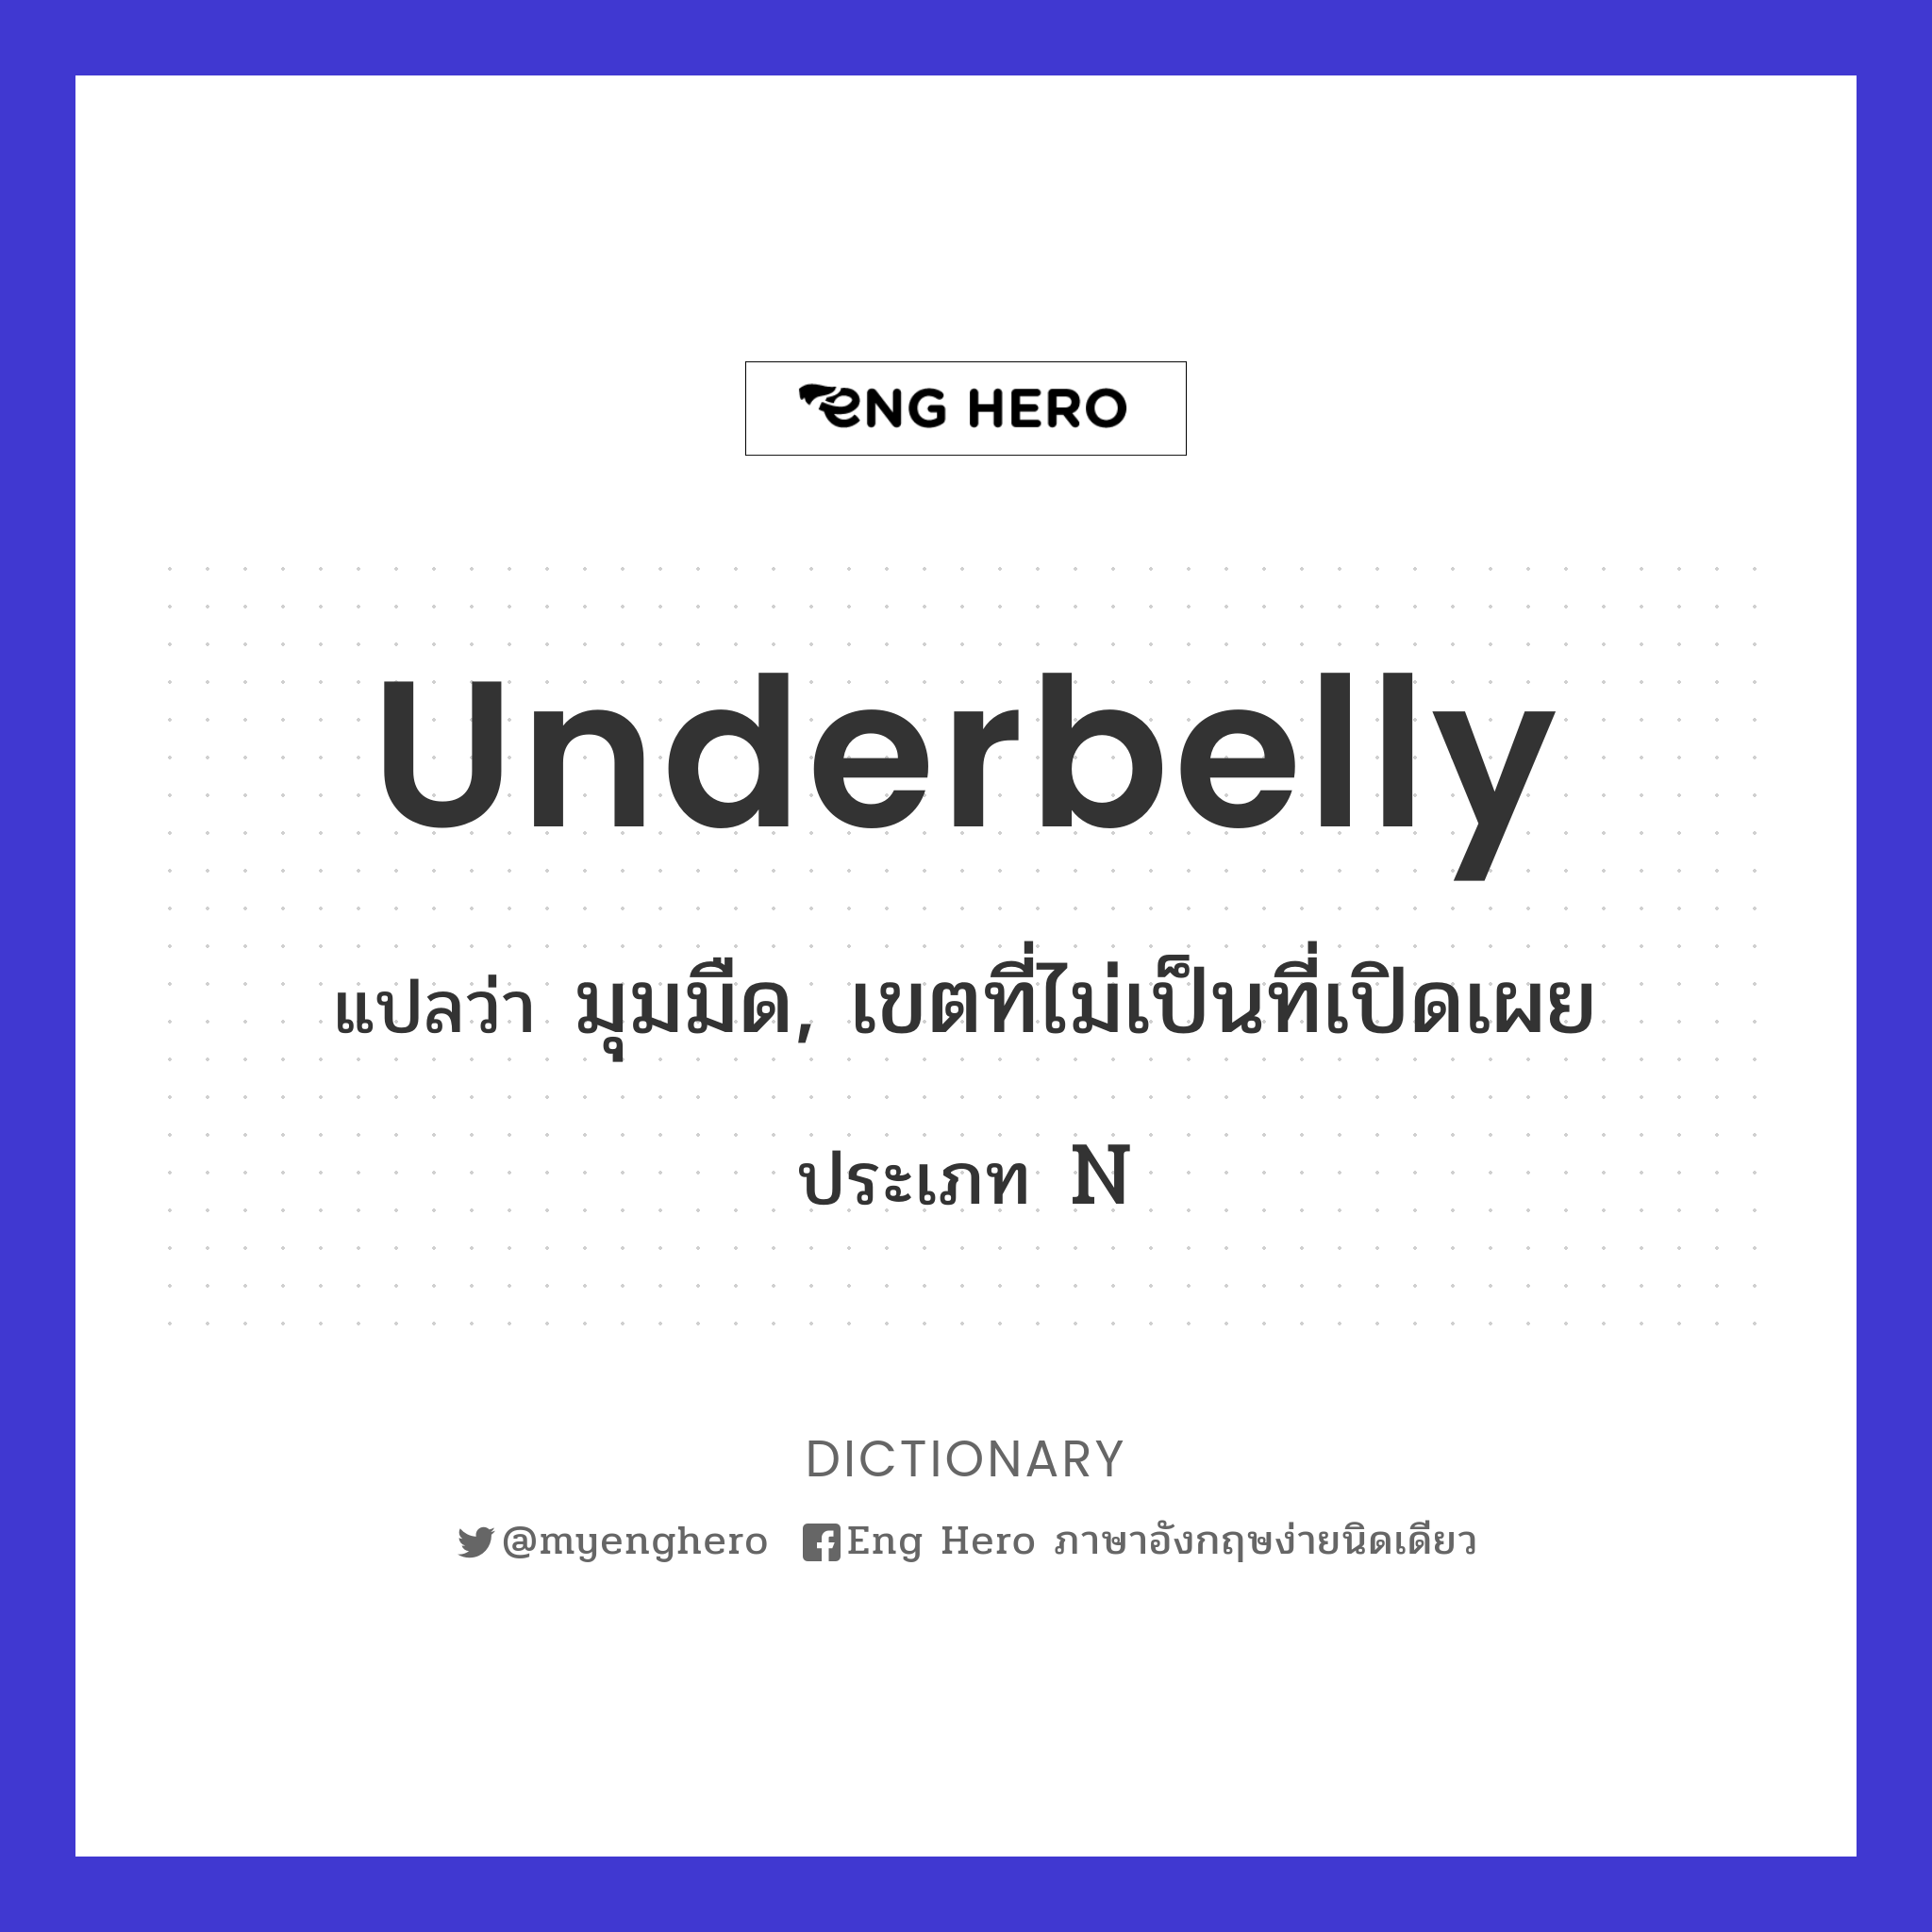 underbelly